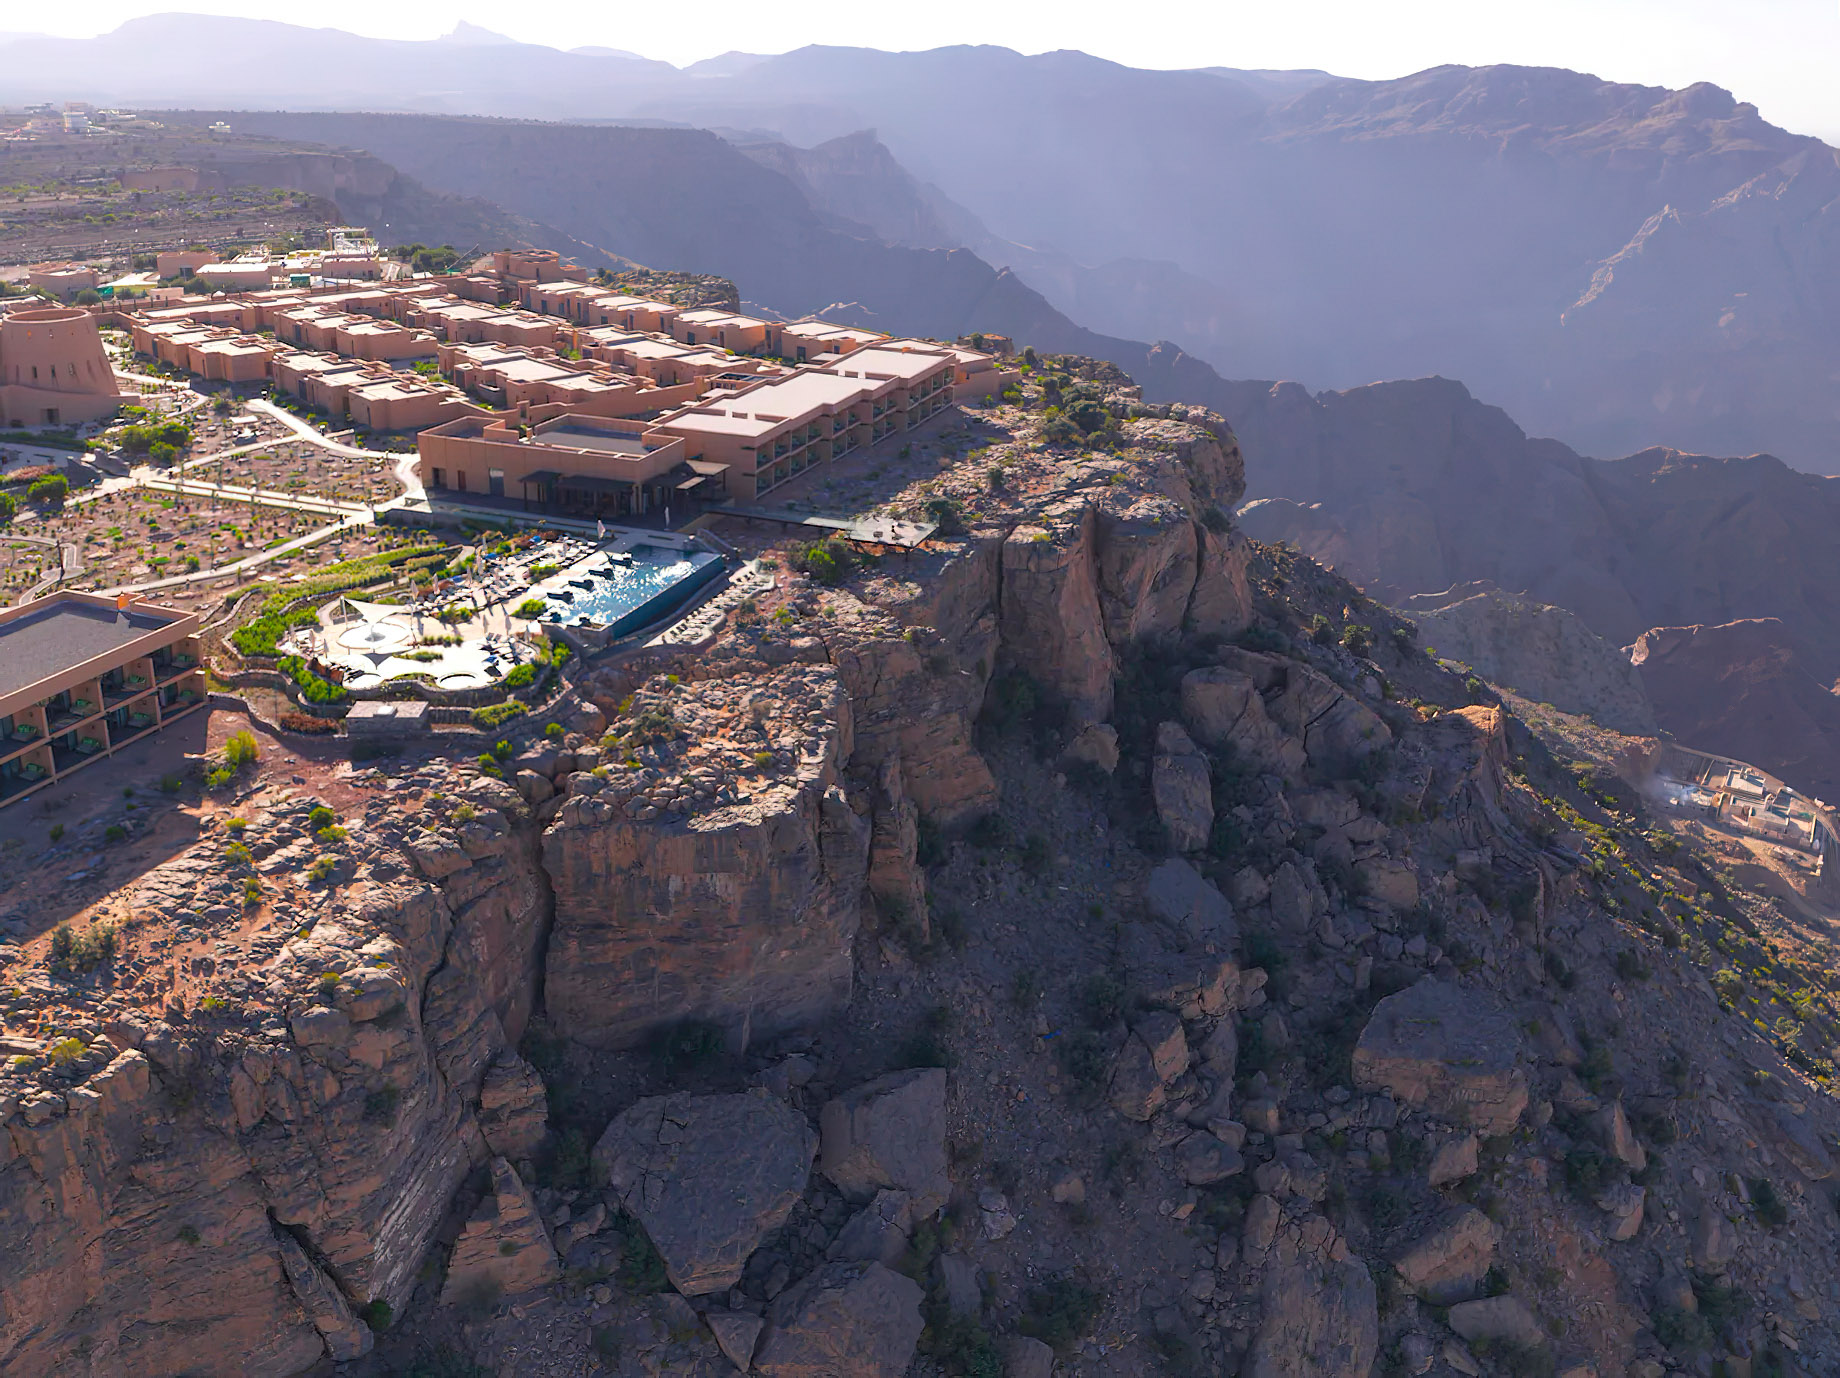 Anantara Al Jabal Al Akhdar Resort - Oman - Aerial View